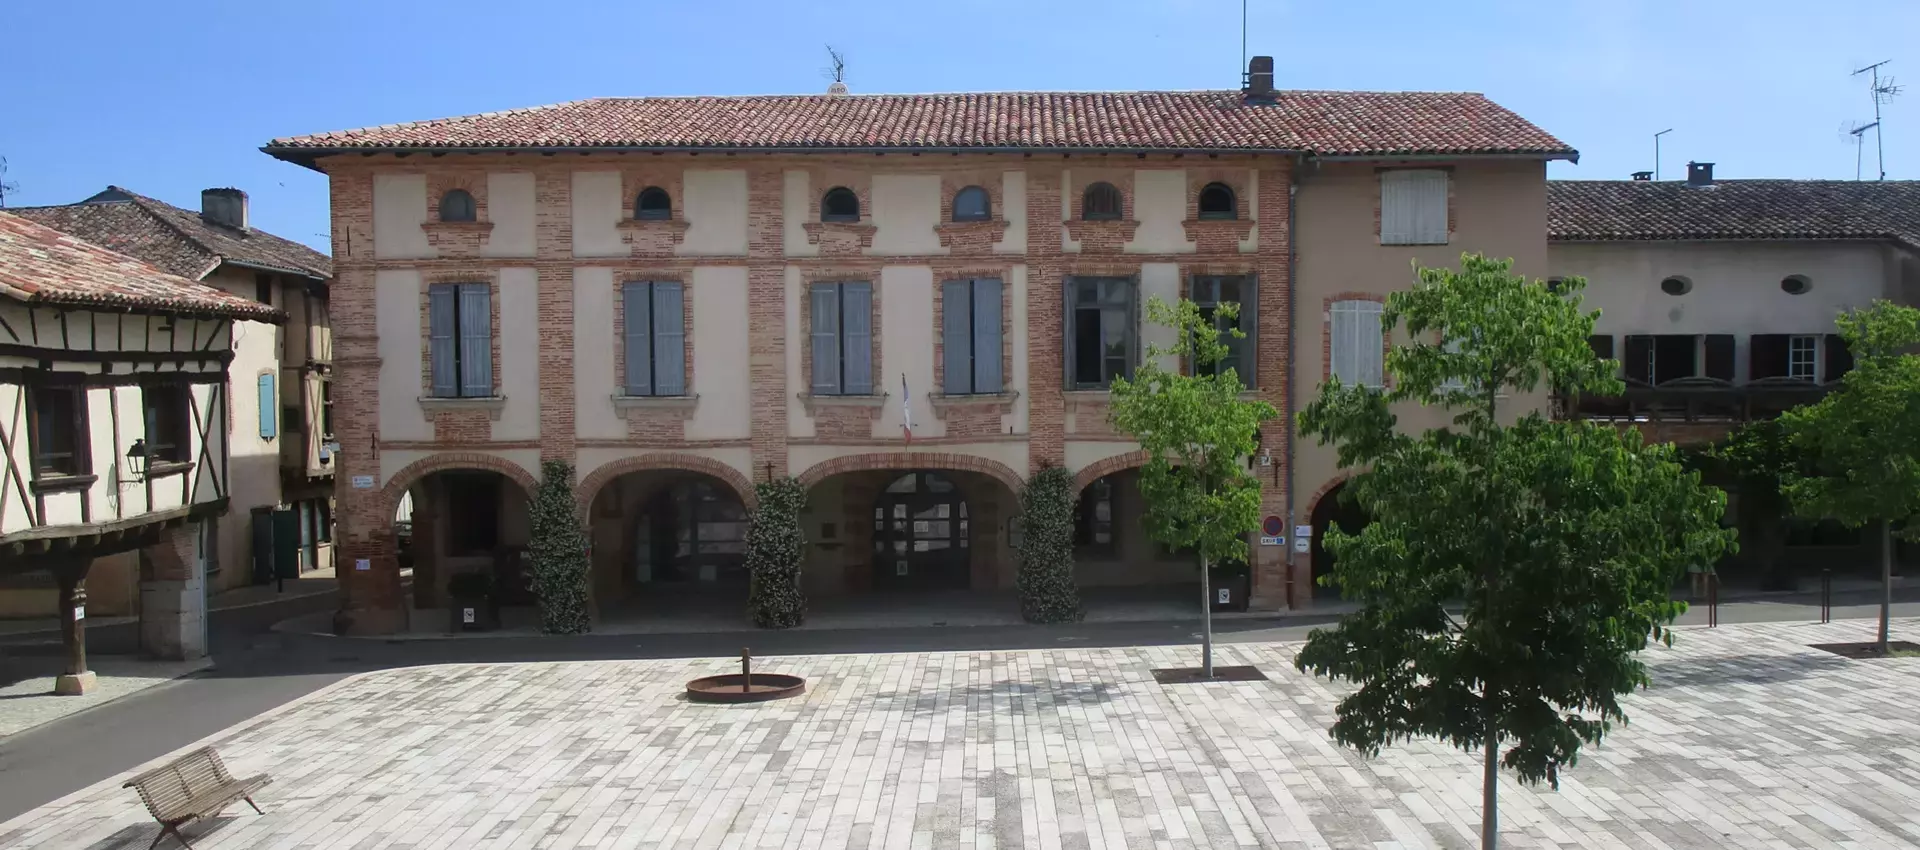 Les procès-verbaux de la mairie de Réalville (82) Tarn et Garonne